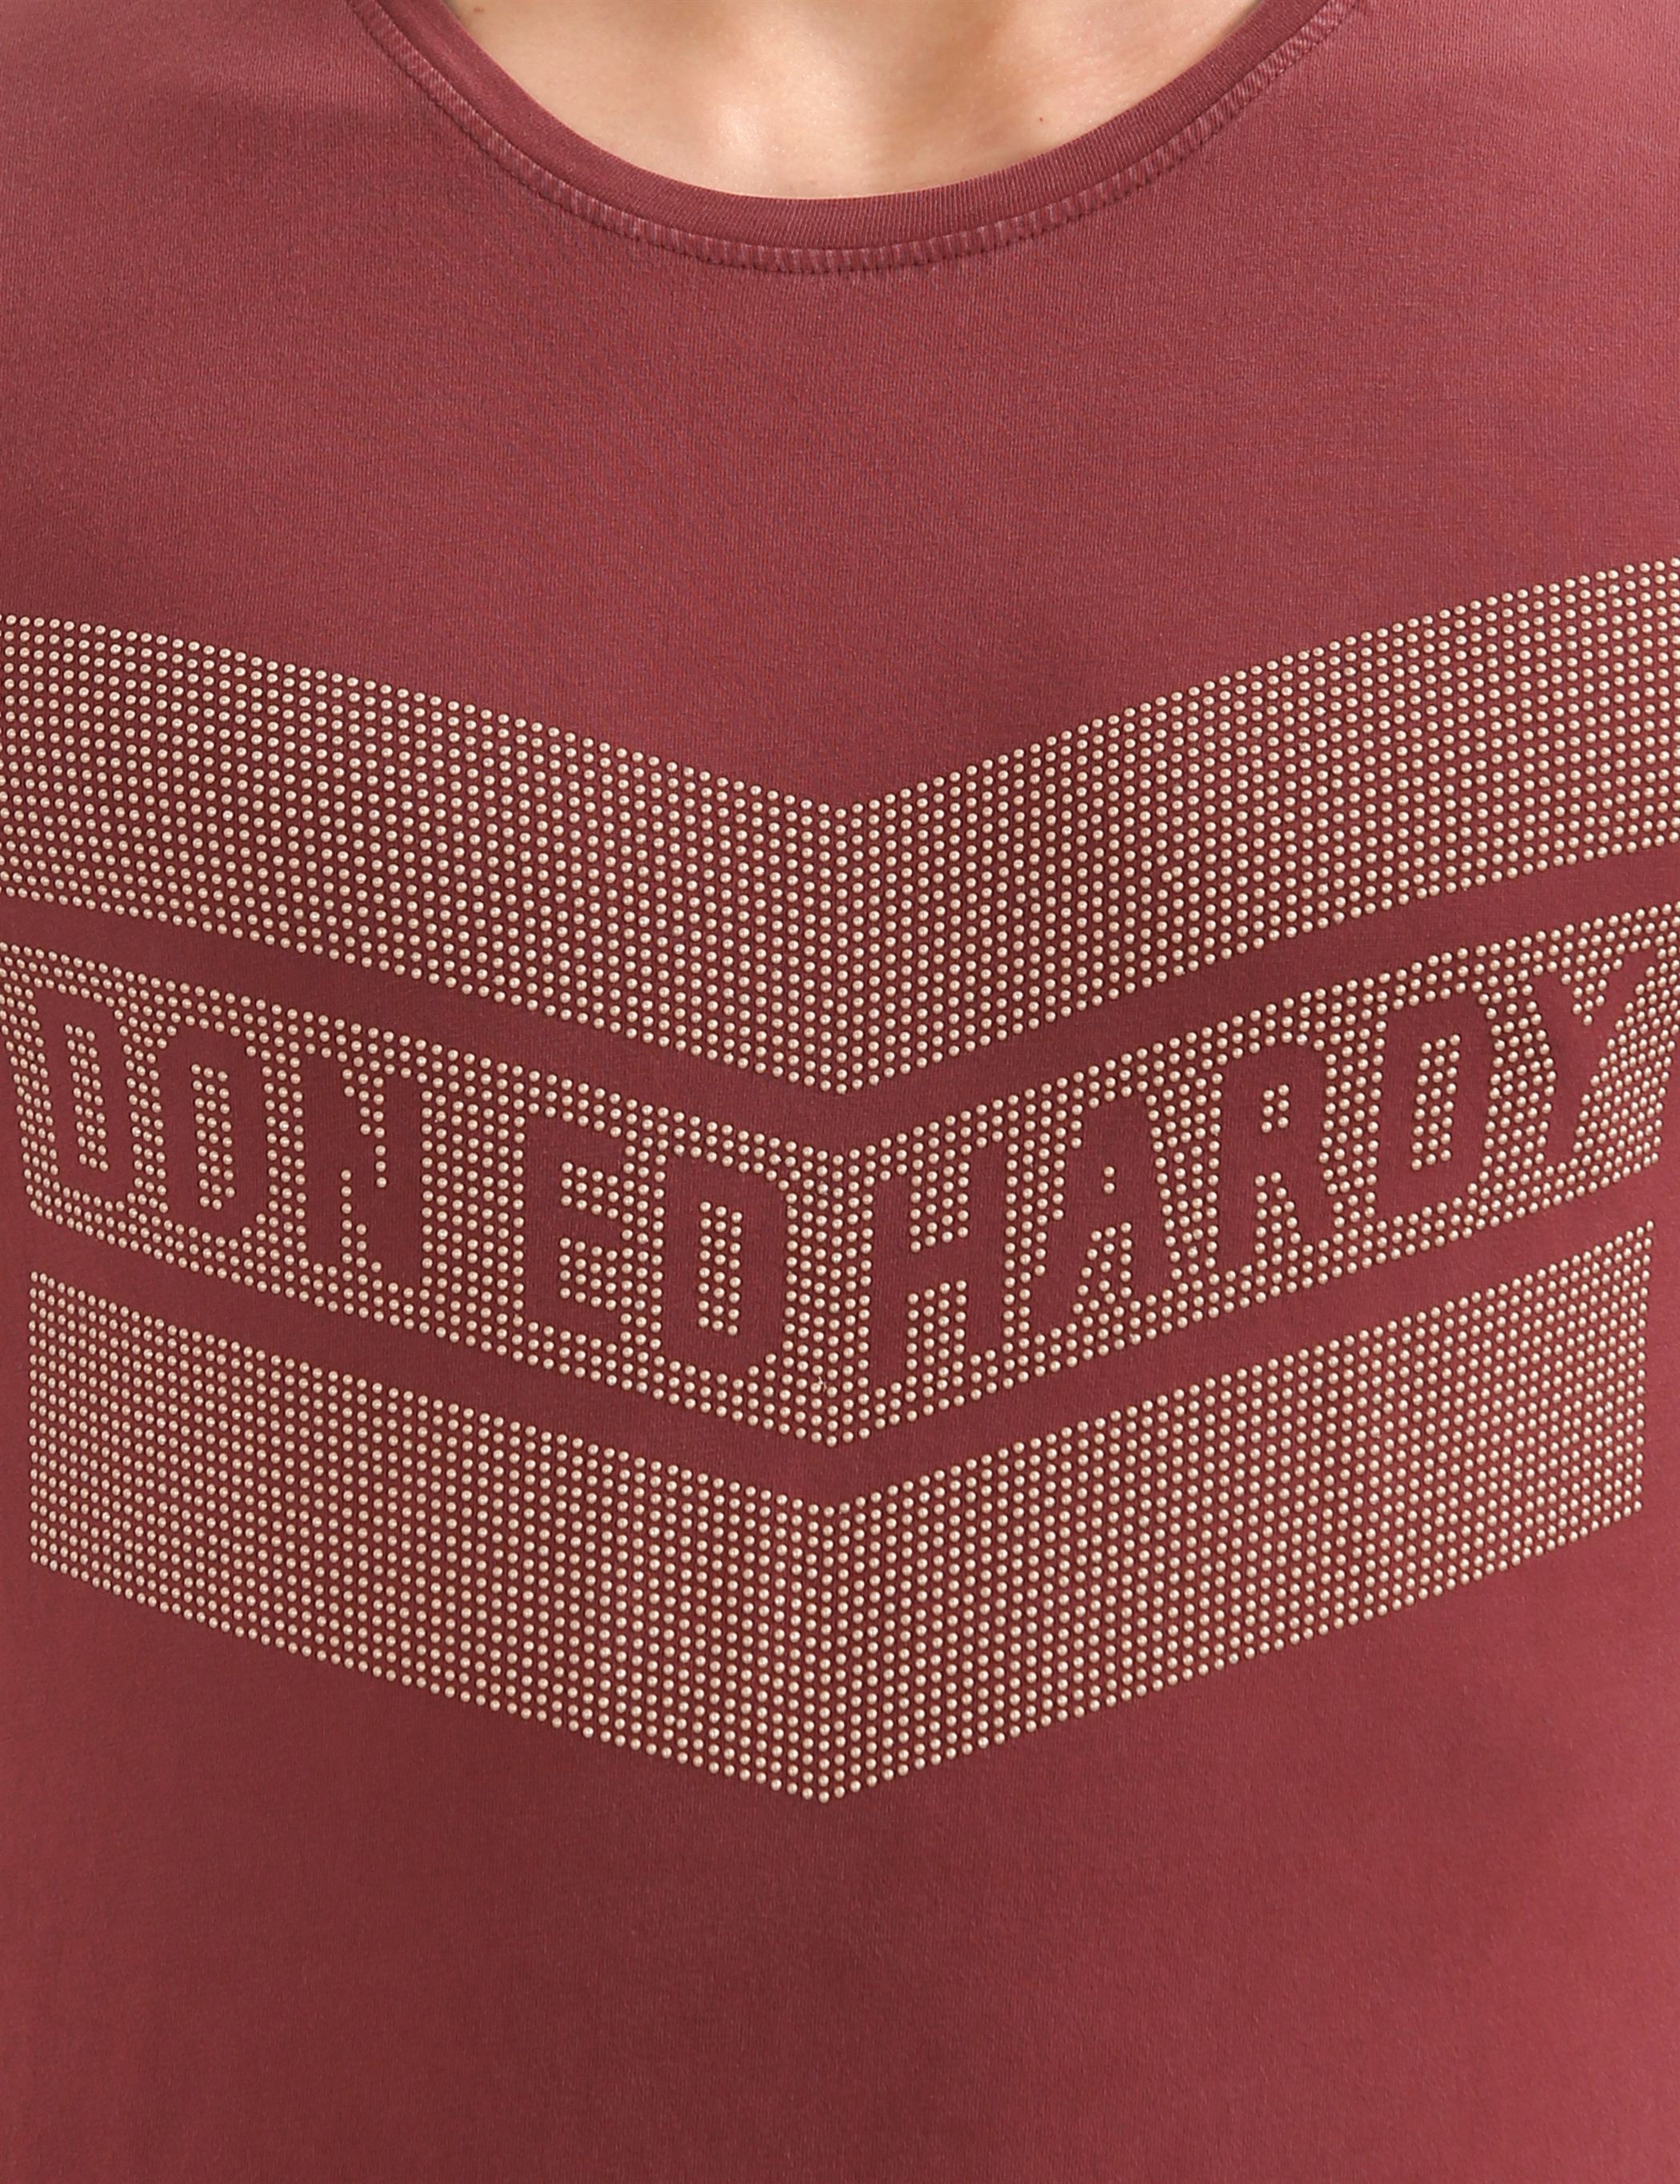 Ed Hardy Casual  Men T-Shirt